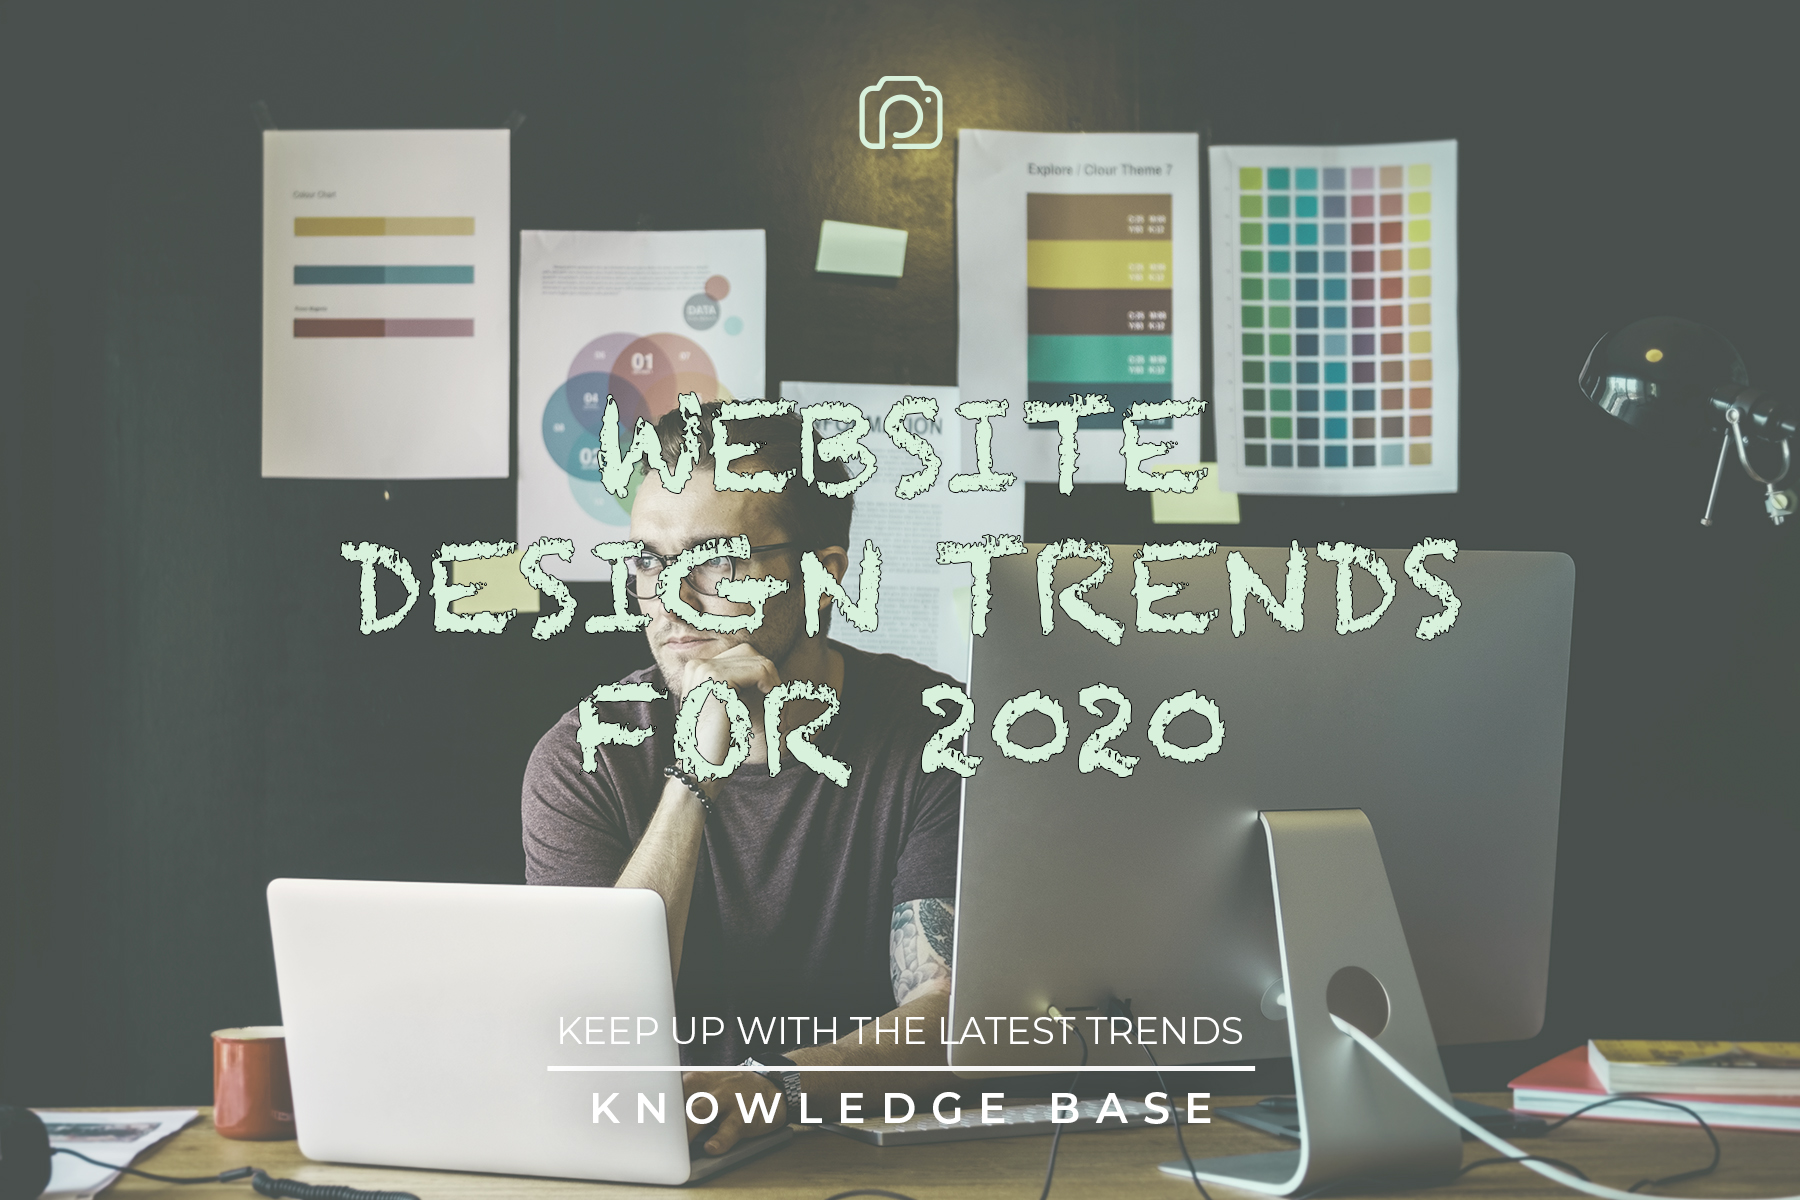 Website design trends for 2020